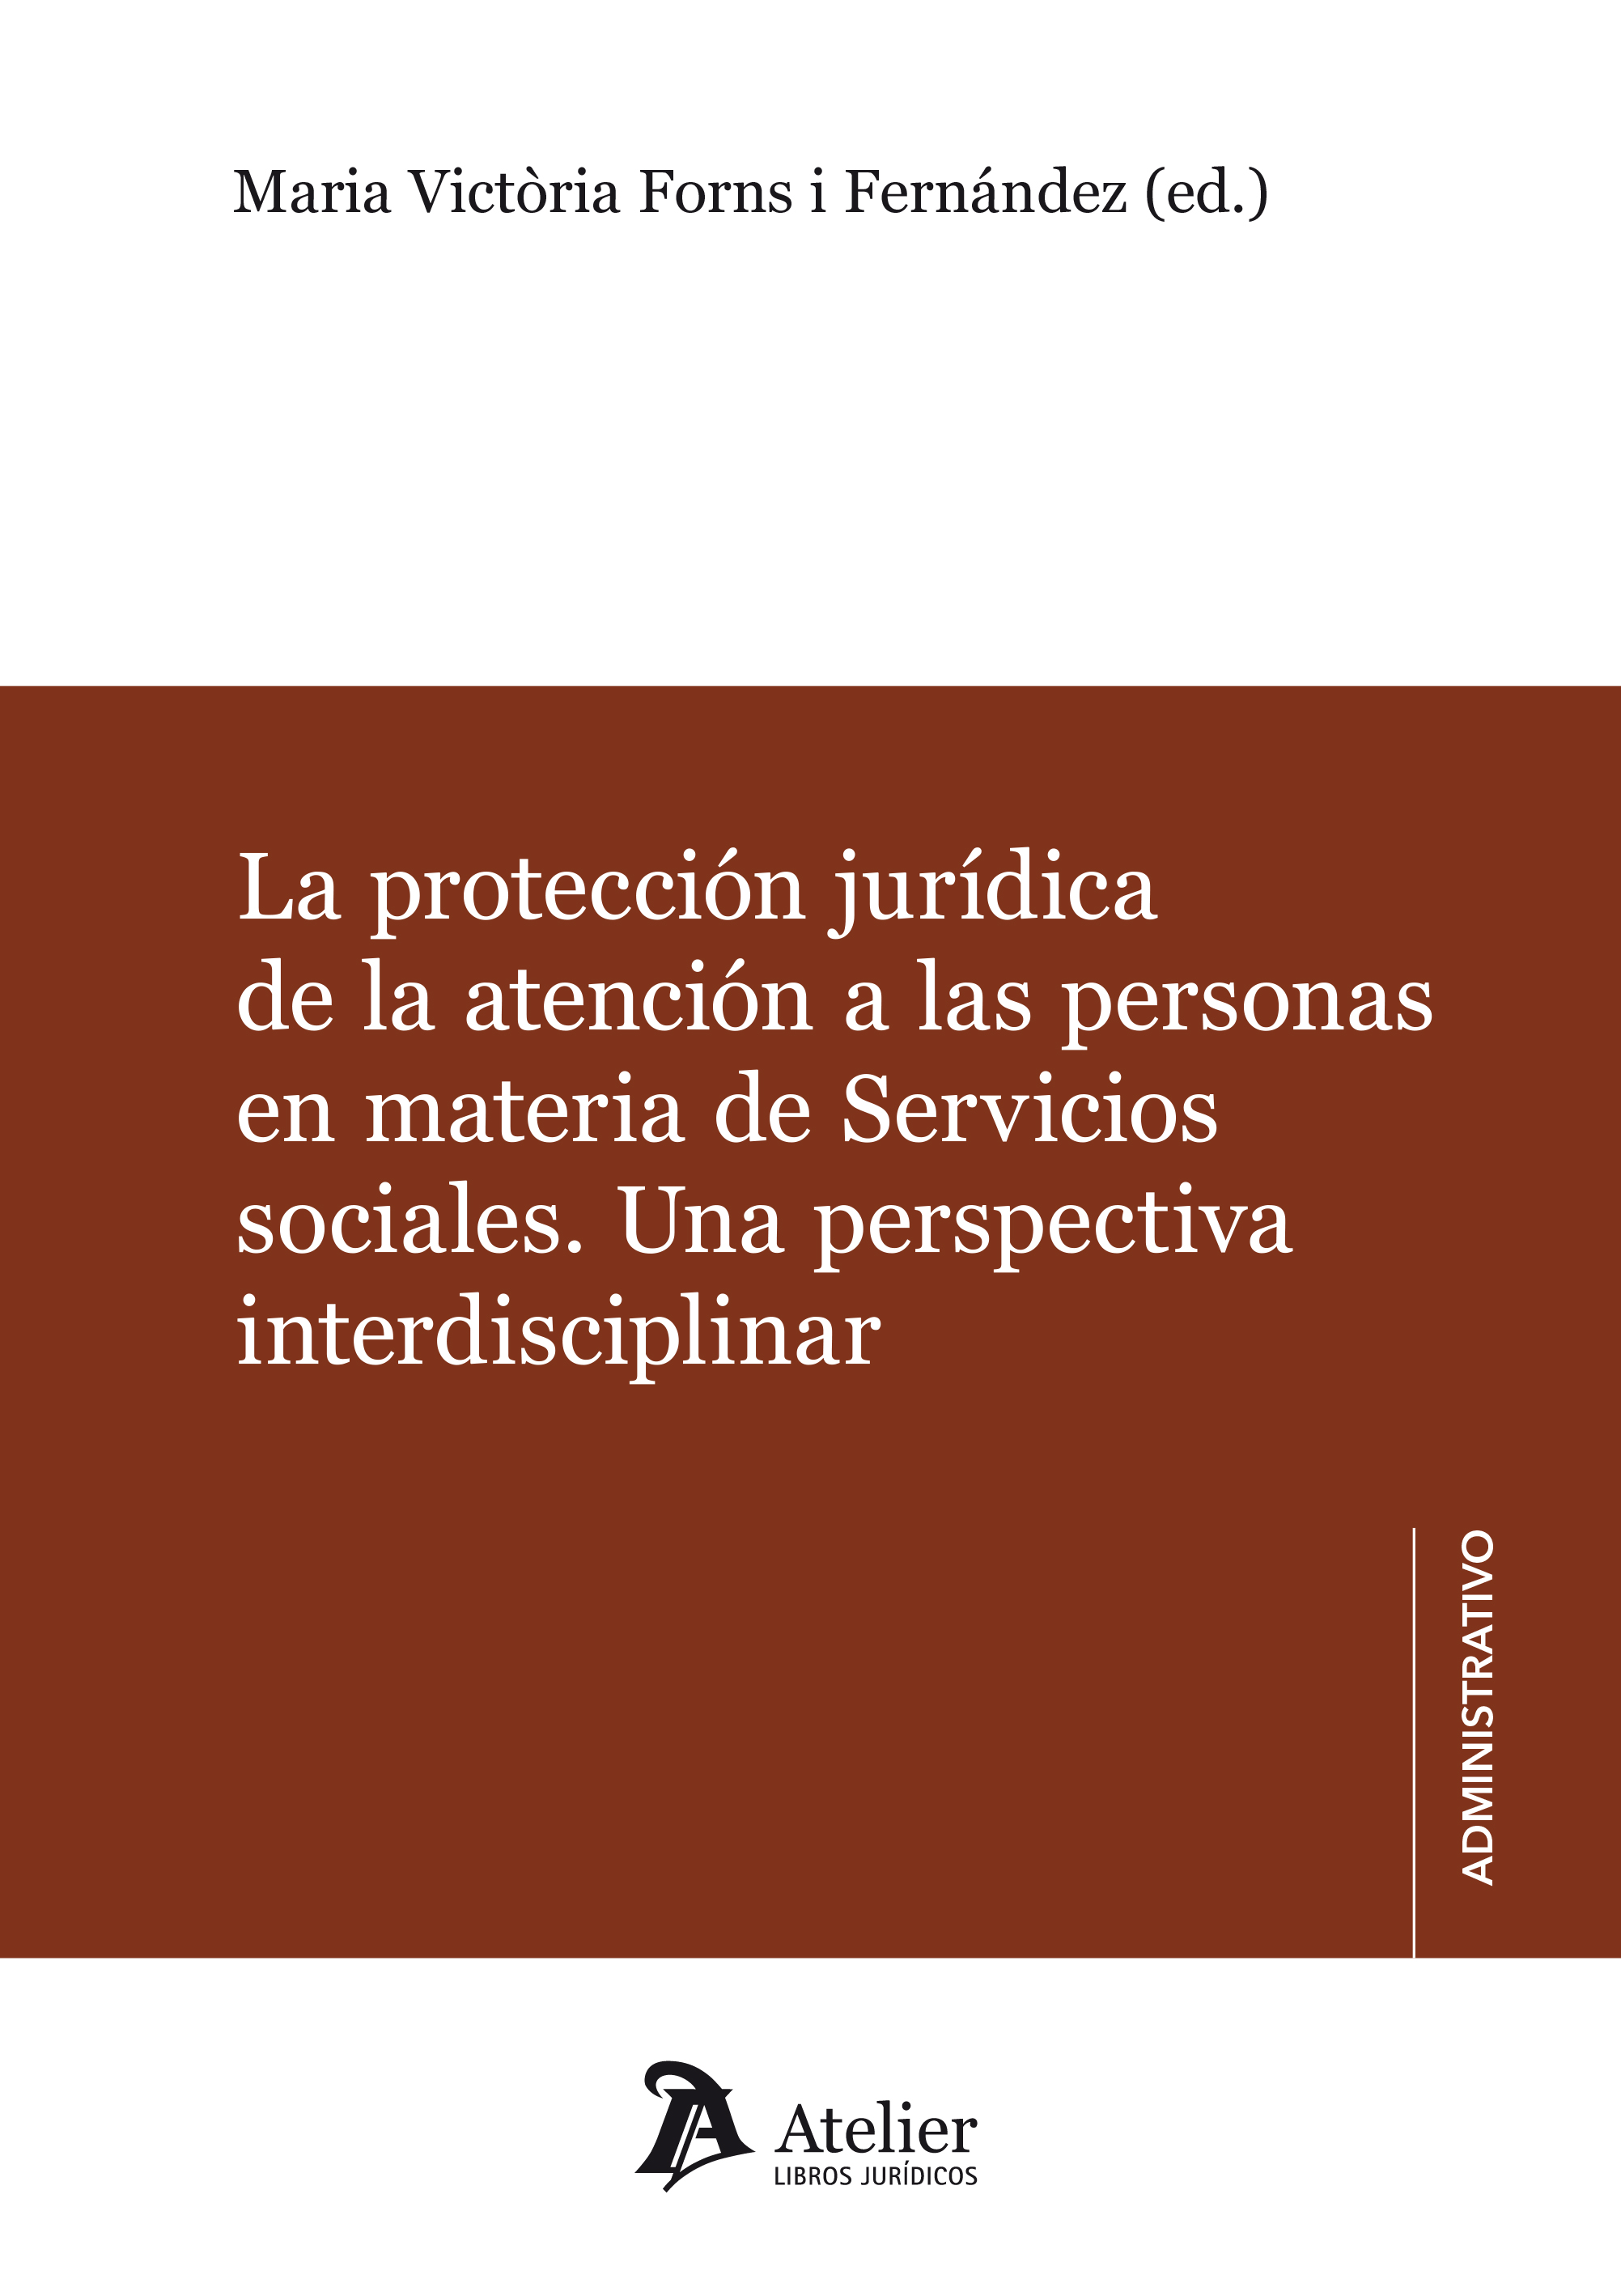 La protección jurídica de la atención a las personas en materia de Servicios Sociales